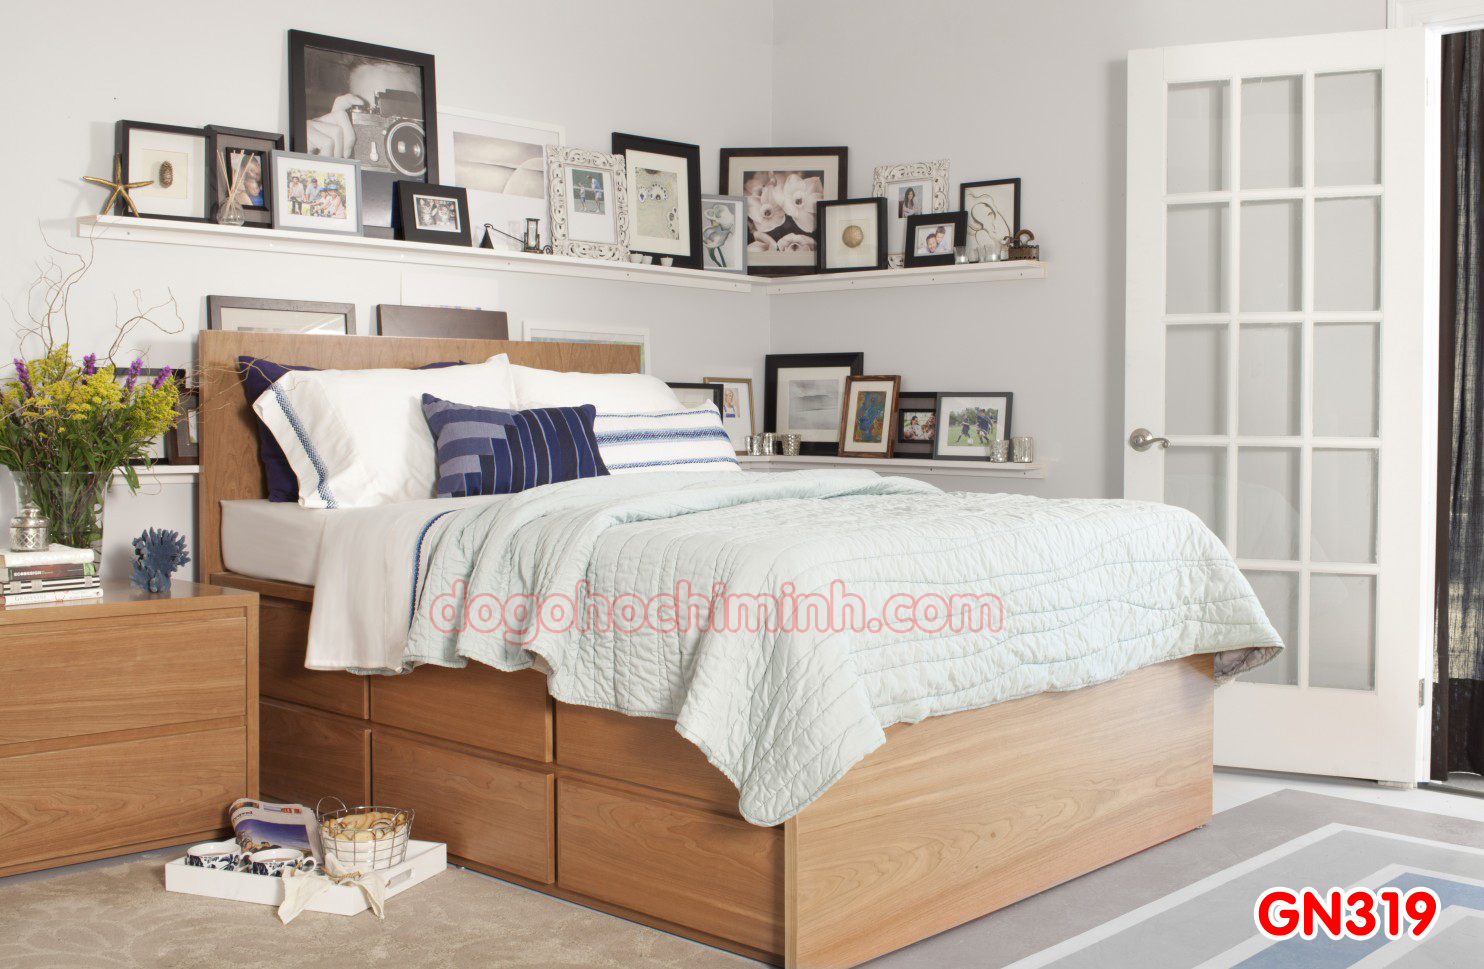 Giường ngủ gỗ đẹp cao cấp giá rẻ GN319